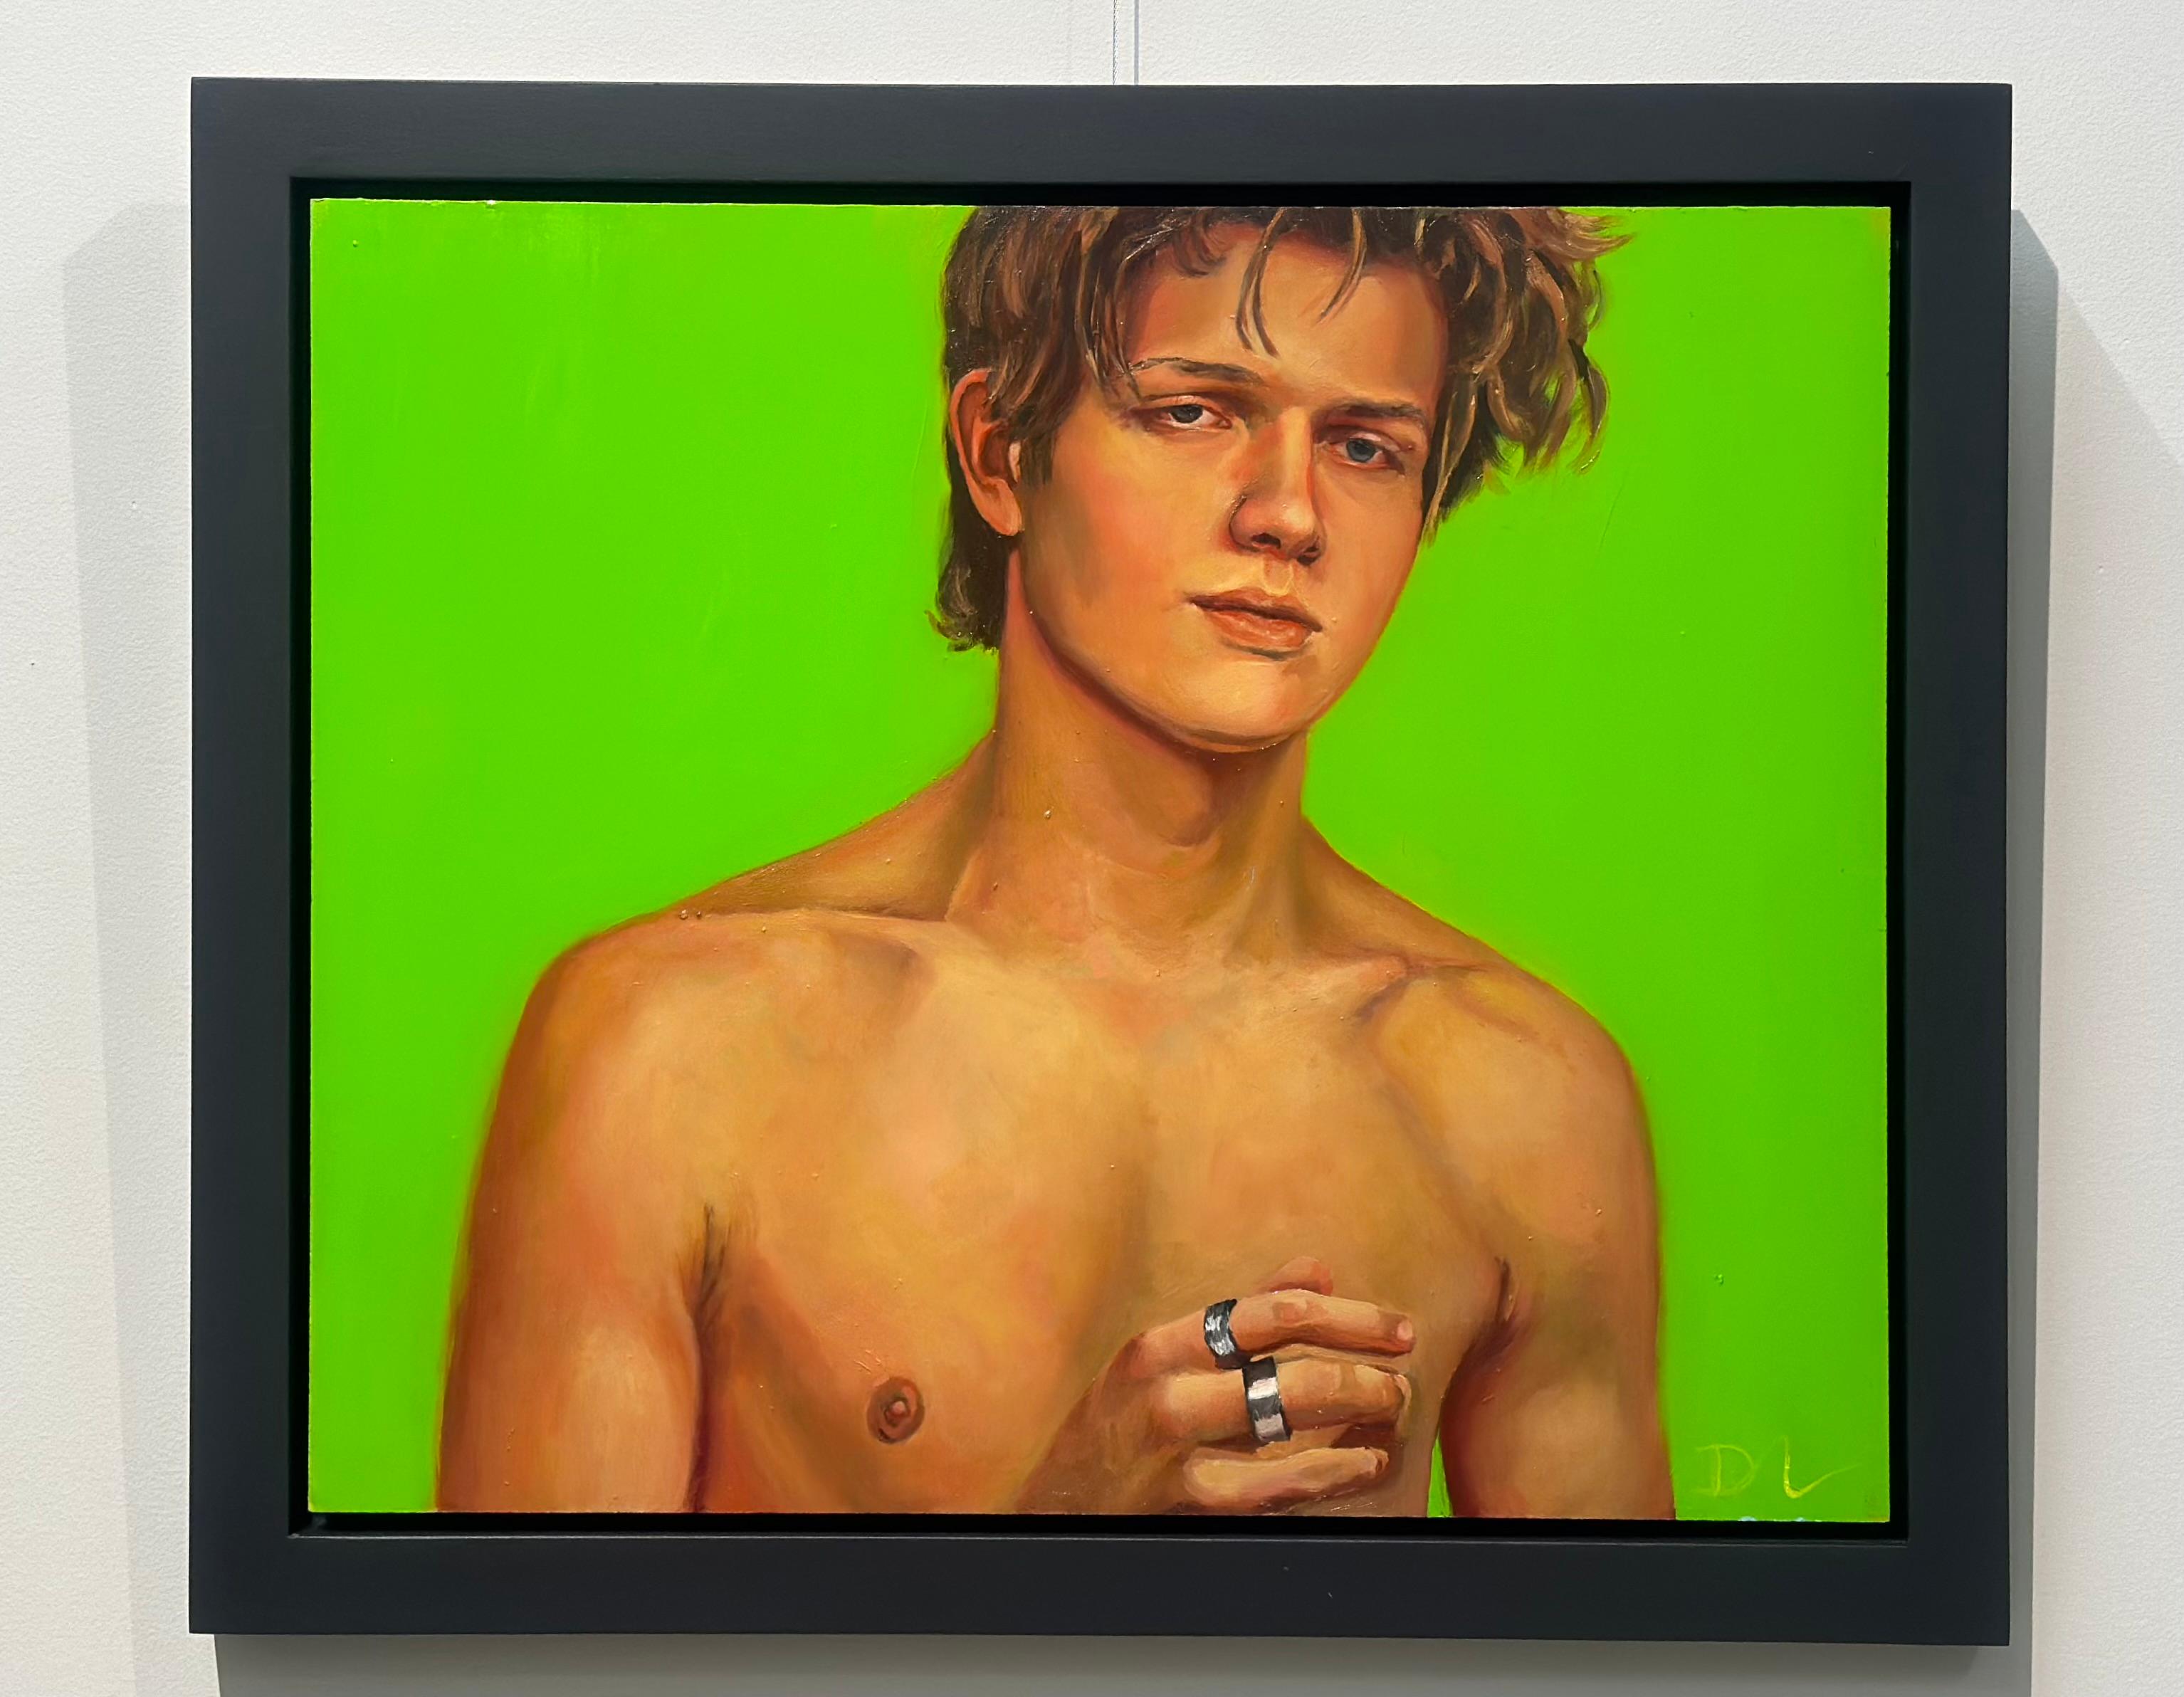 Quand je vis mon rêve - 21e siècle  Peinture contemporaine d'un garçon à la poitrine nue - Contemporain Painting par David van der Linden